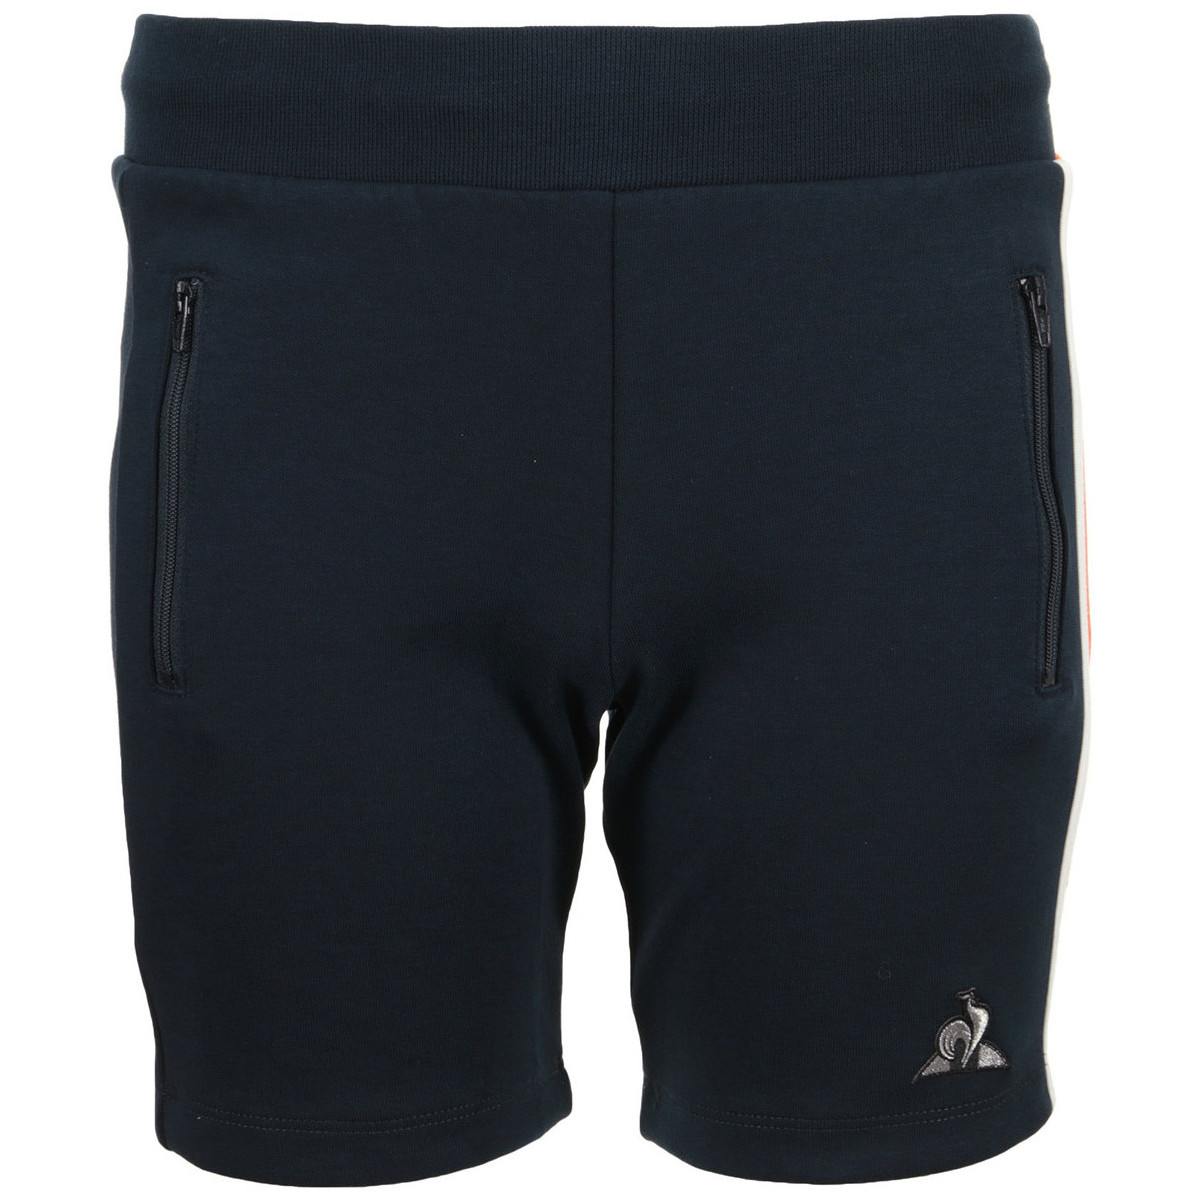 Textiel Jongens Korte broeken / Bermuda's Le Coq Sportif Tech Short Regular N°1 Kids Blauw